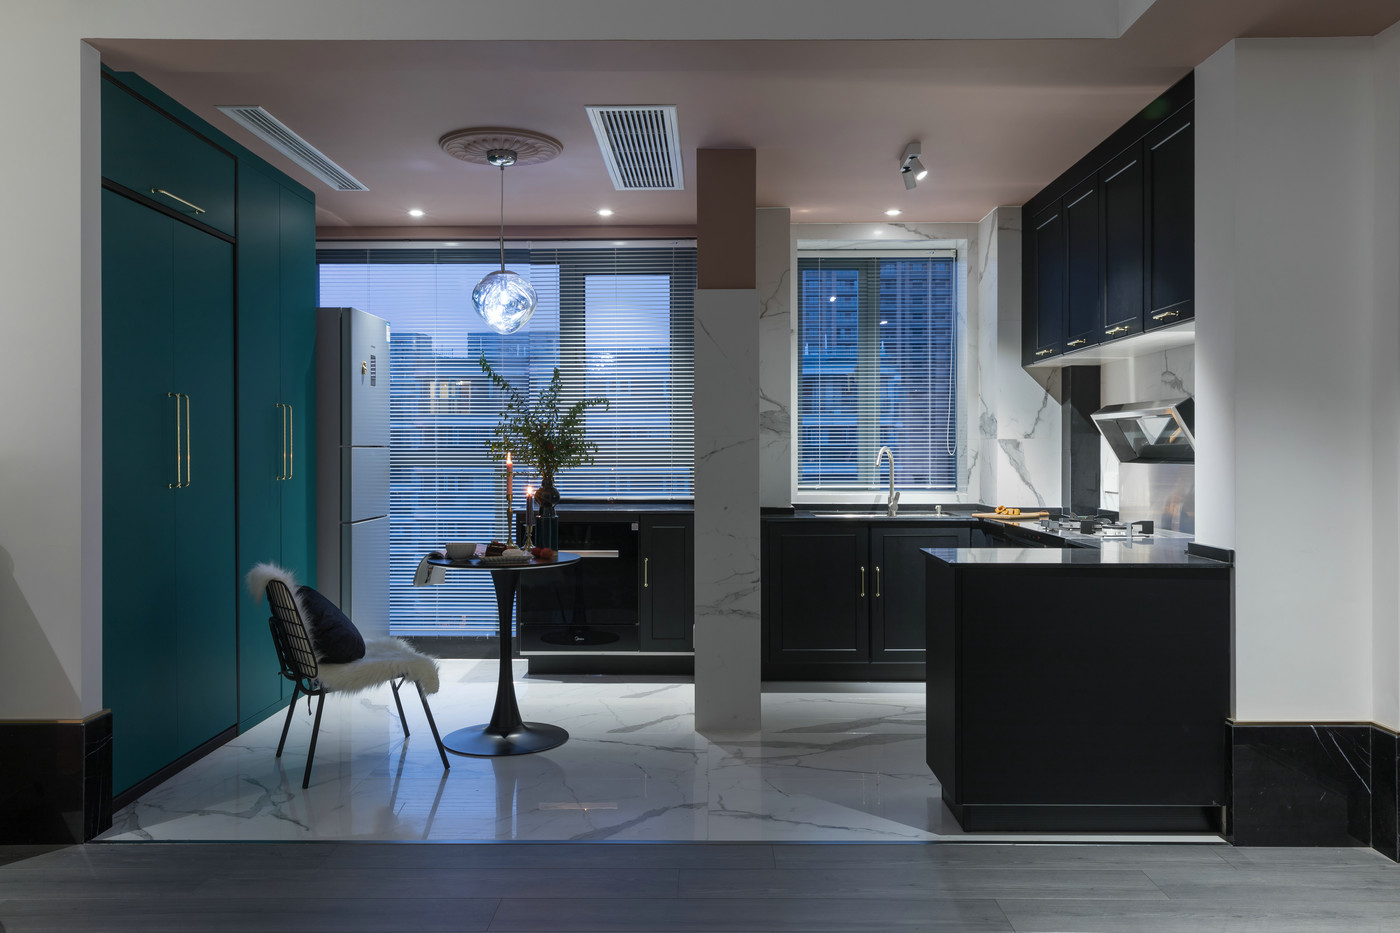 厨房大量运用冷色塑造，深浅蓝绿色的运用简约而不张扬，让整个空间显得精致有序。